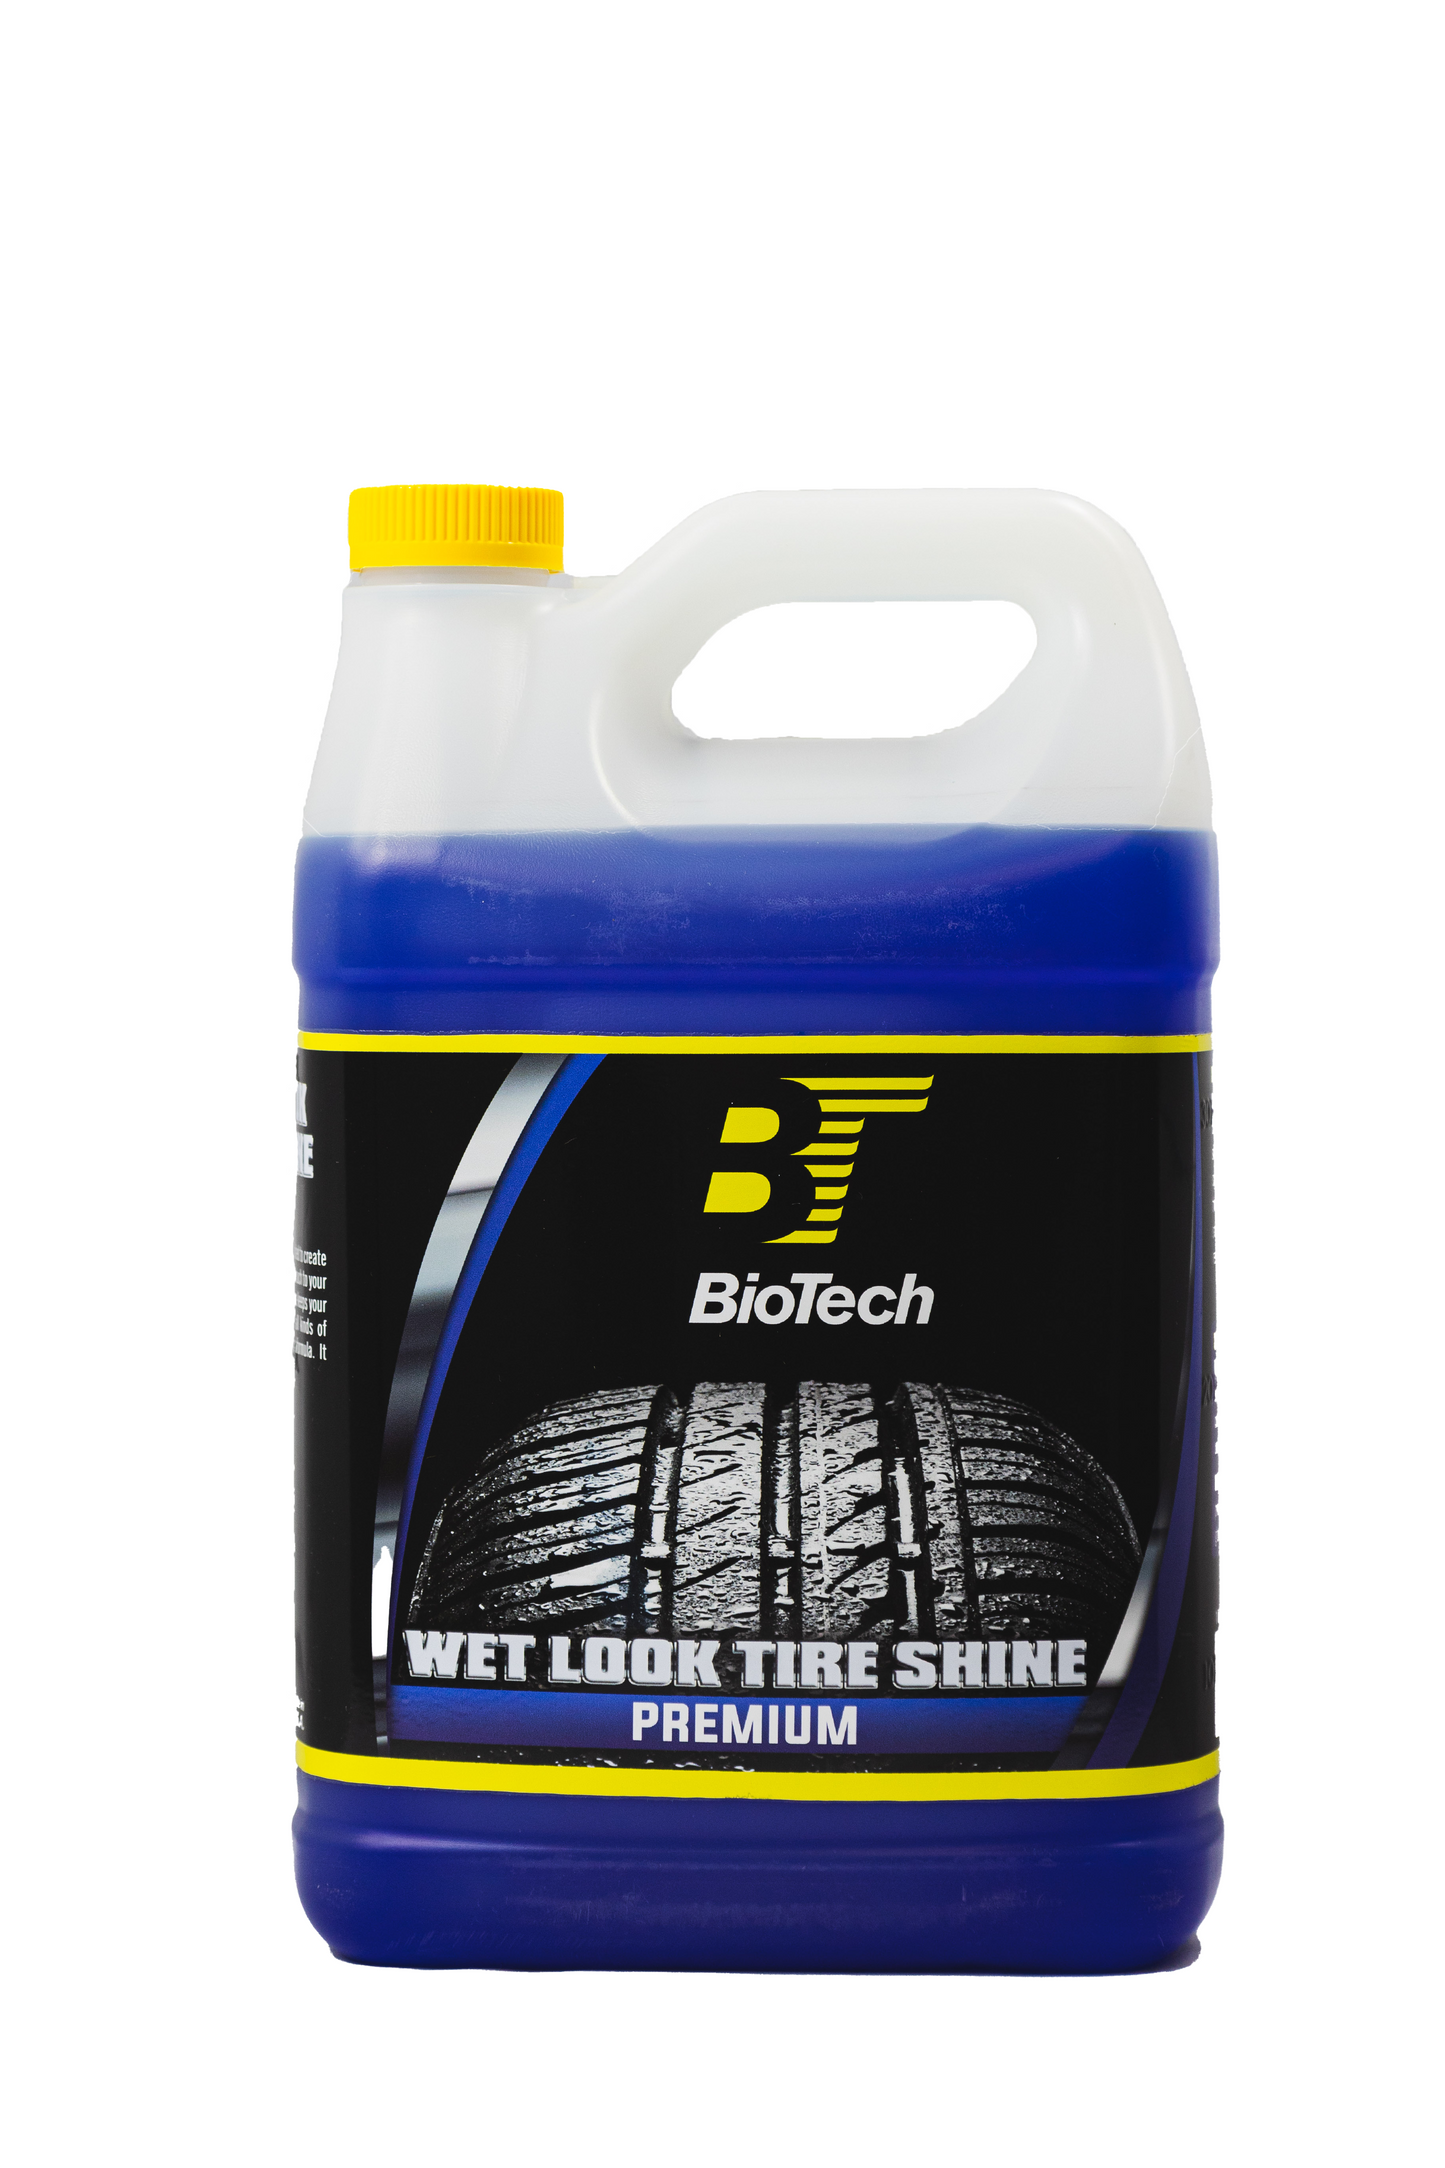 BioTech Wet Look Tire Shine Premium